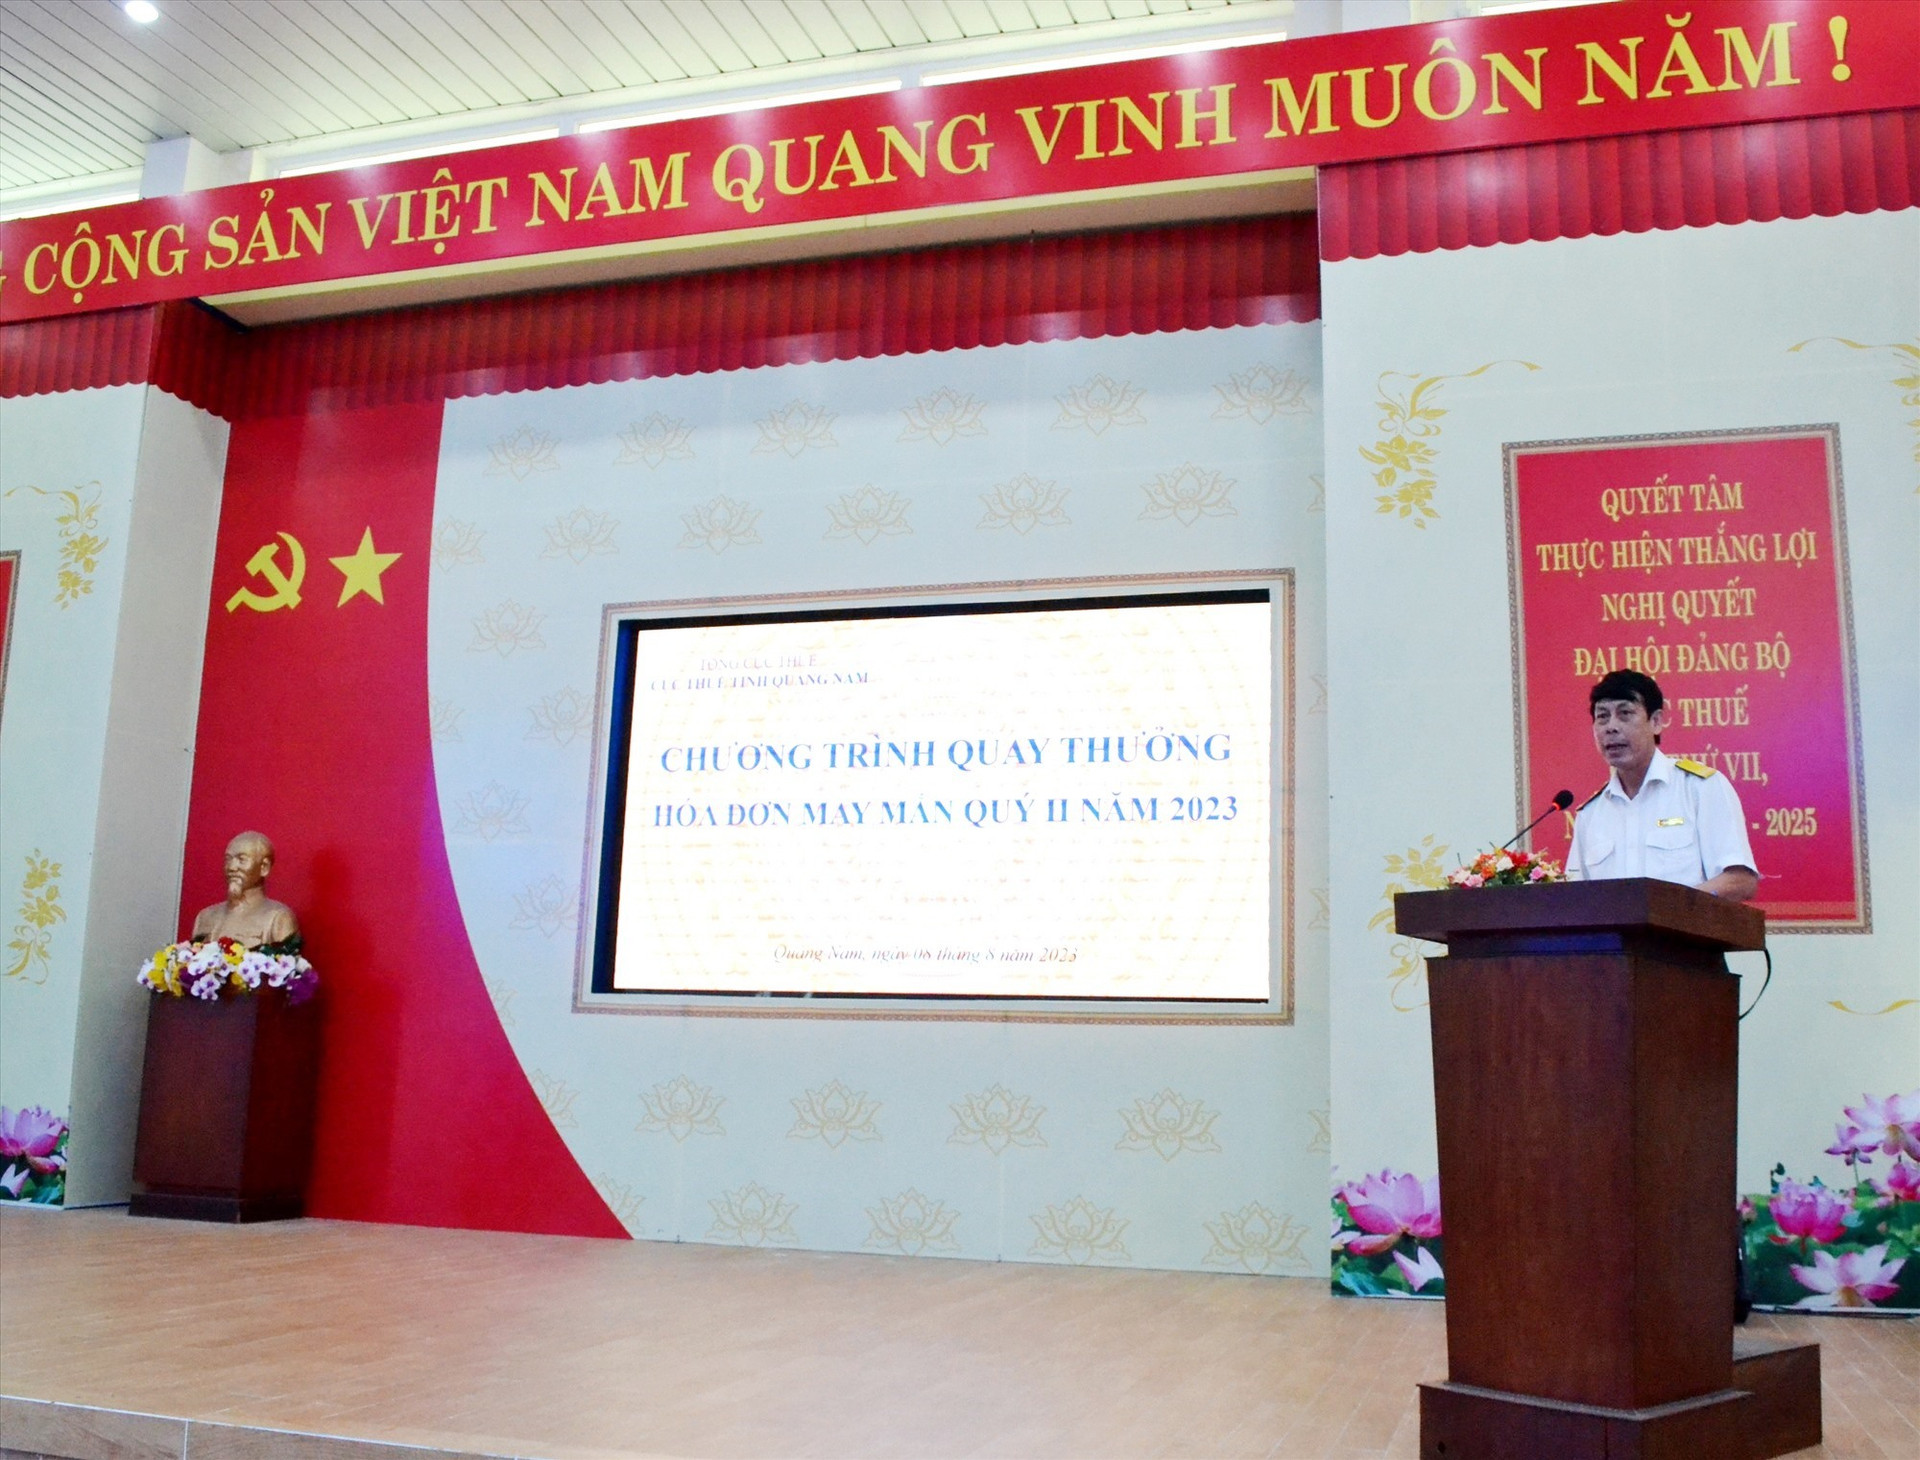 Ông Lương Đình Đường - Phó Cục trưởng Cục Thuế Quảng Nam phát biểu tại chương trình quay thưởng “Hóa đơn may mắn” quý II.2023. Ảnh: Q.VIỆT